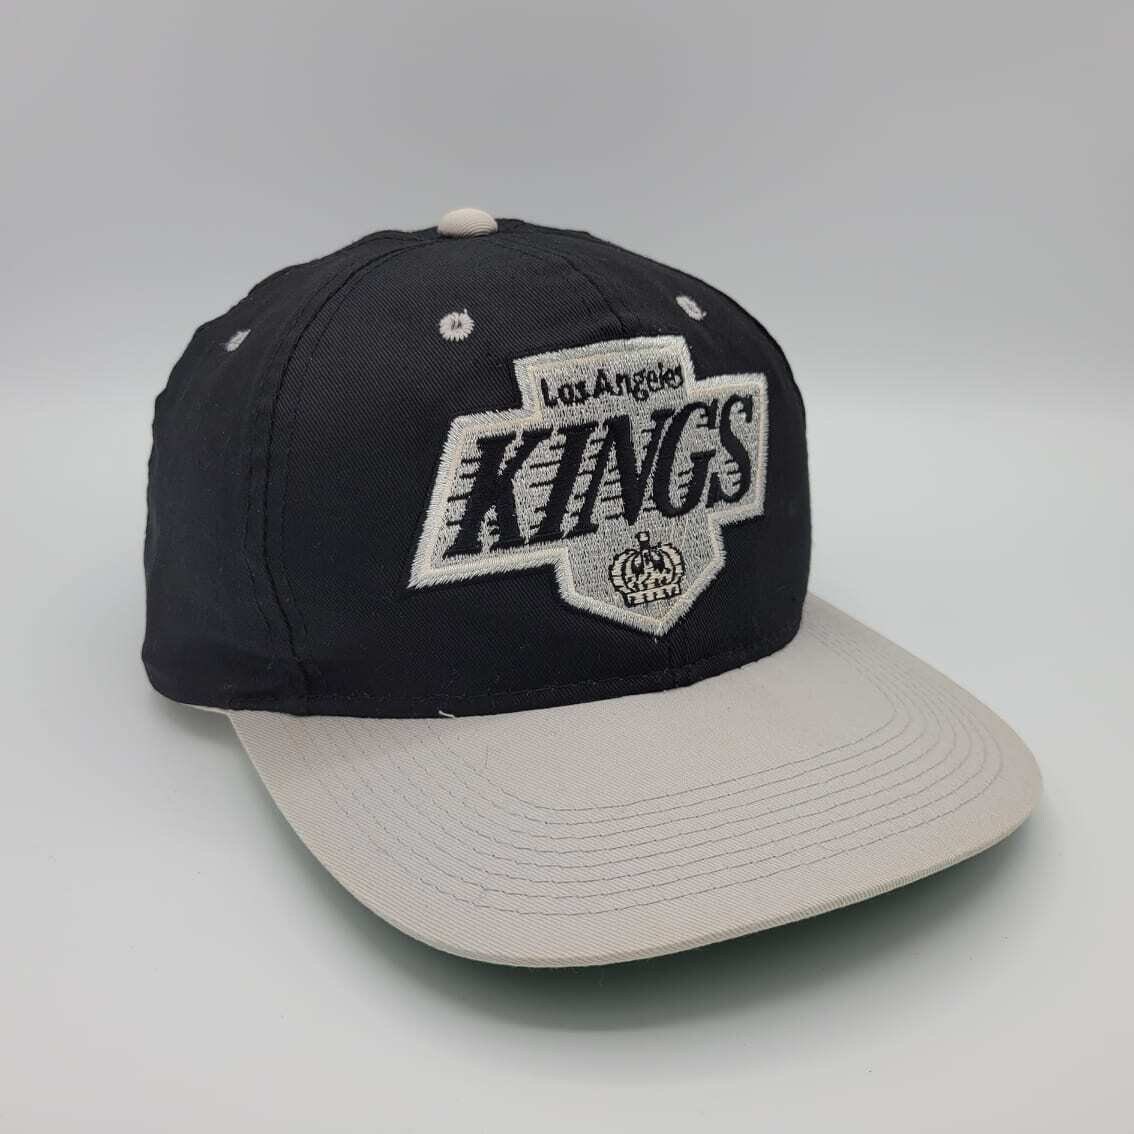 Vintage Los Angeles Kings CCM Hockey Snapback Trucker Hat Cap White/Black